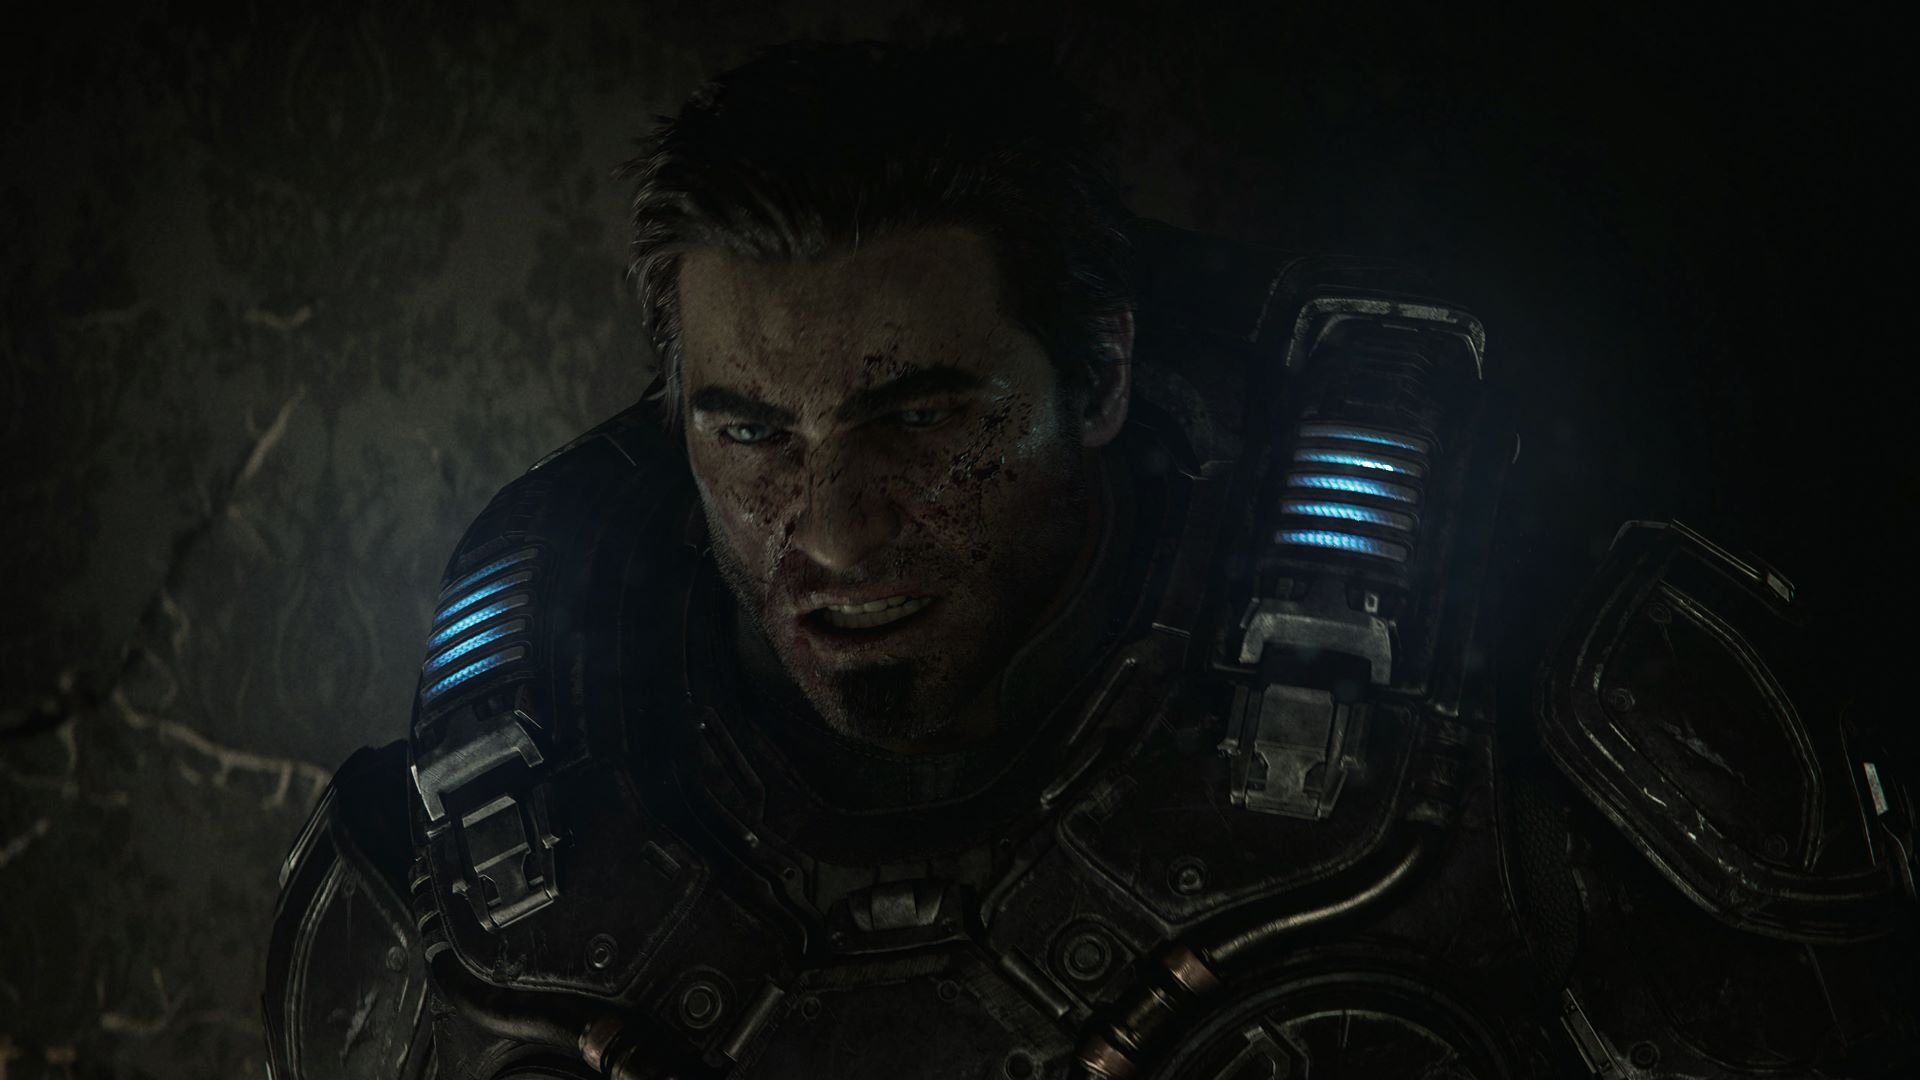 صورت خونین مارکوس فینیکس، قهرمان سری گرز آو وار در بازی Gears of War: E-Day استودیو کوالیشن شرکت Microsoft